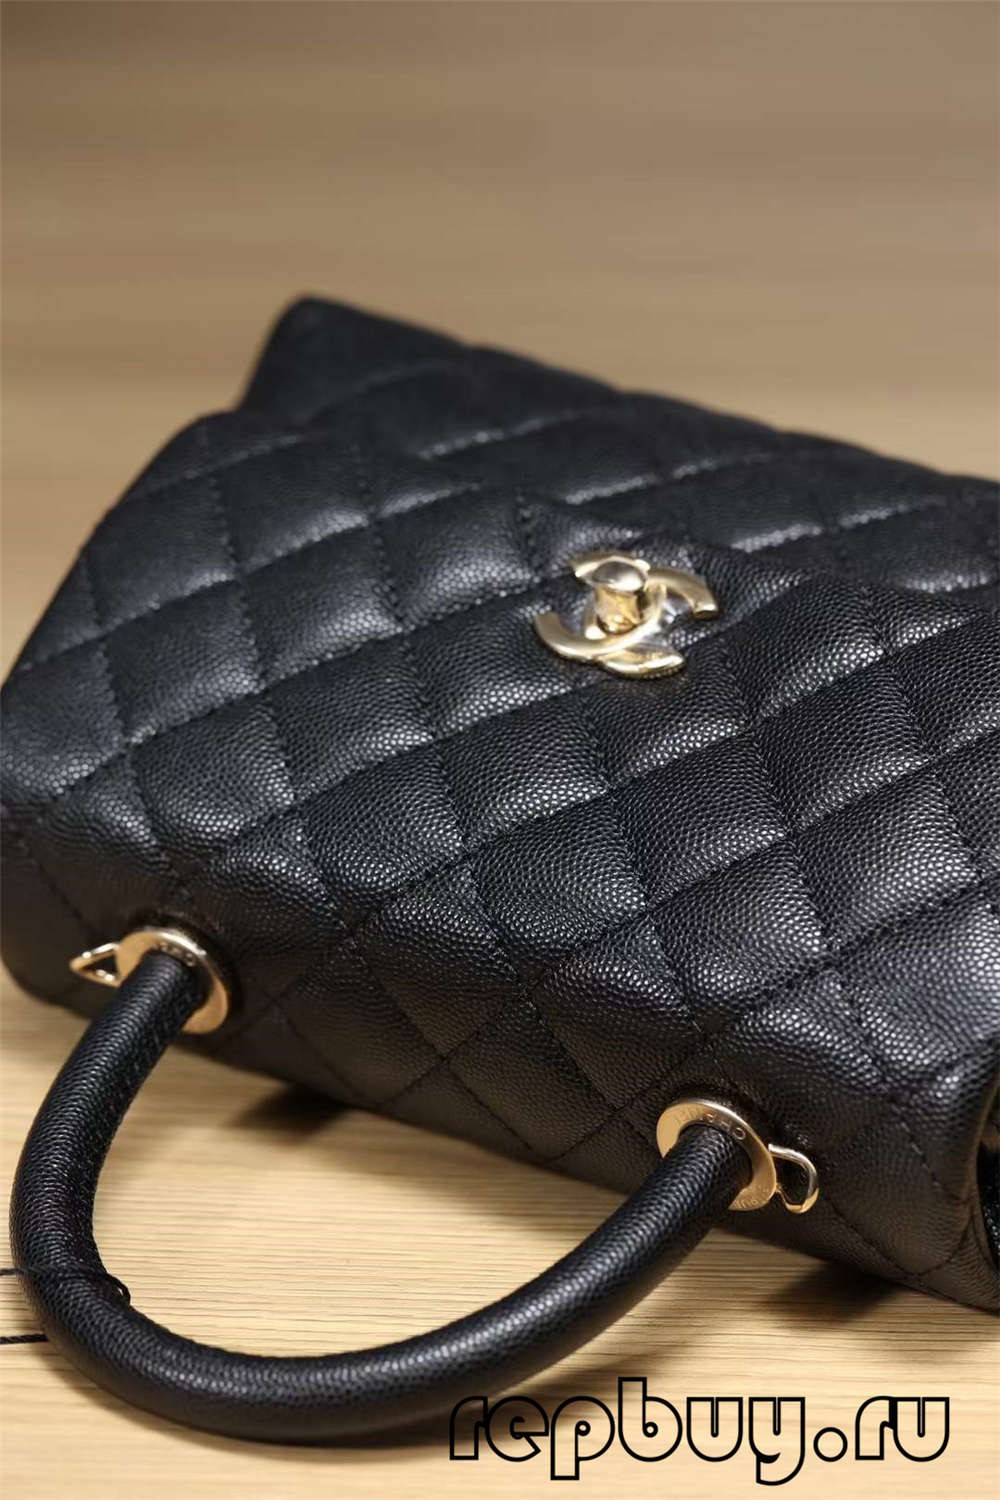 Chanel Coco Handle Top Replica Rokassomu Black Gold Buckle Look (atjaunināts 2022. gadā) — labākās kvalitātes viltotās Louis Vuitton somas tiešsaistes veikals, dizainera somas kopija ru